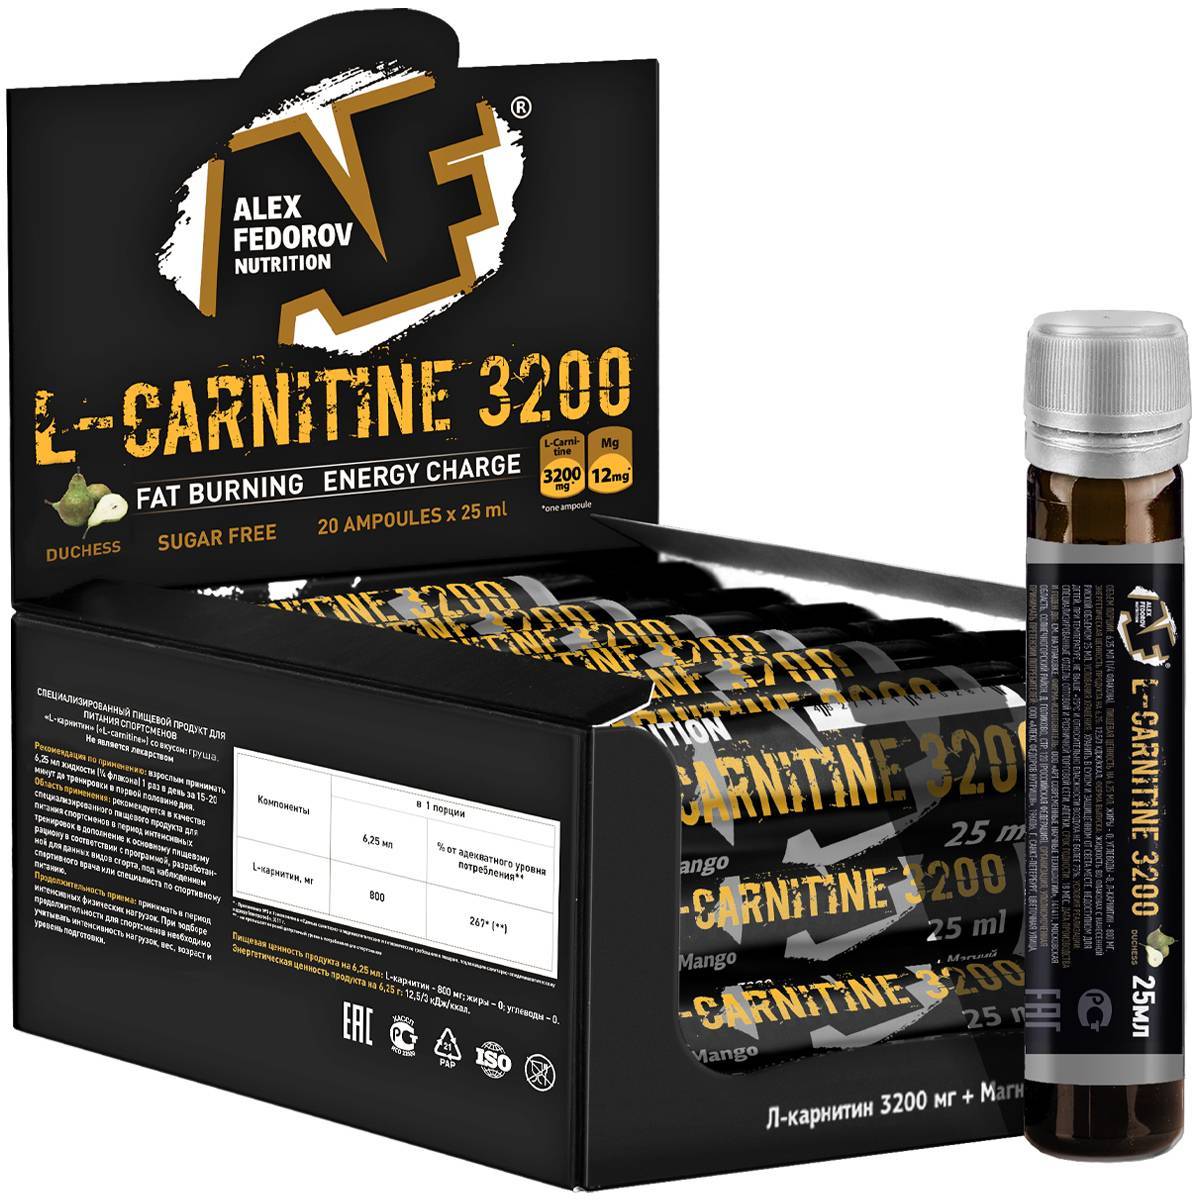 L-carnitine от optimum nutrition